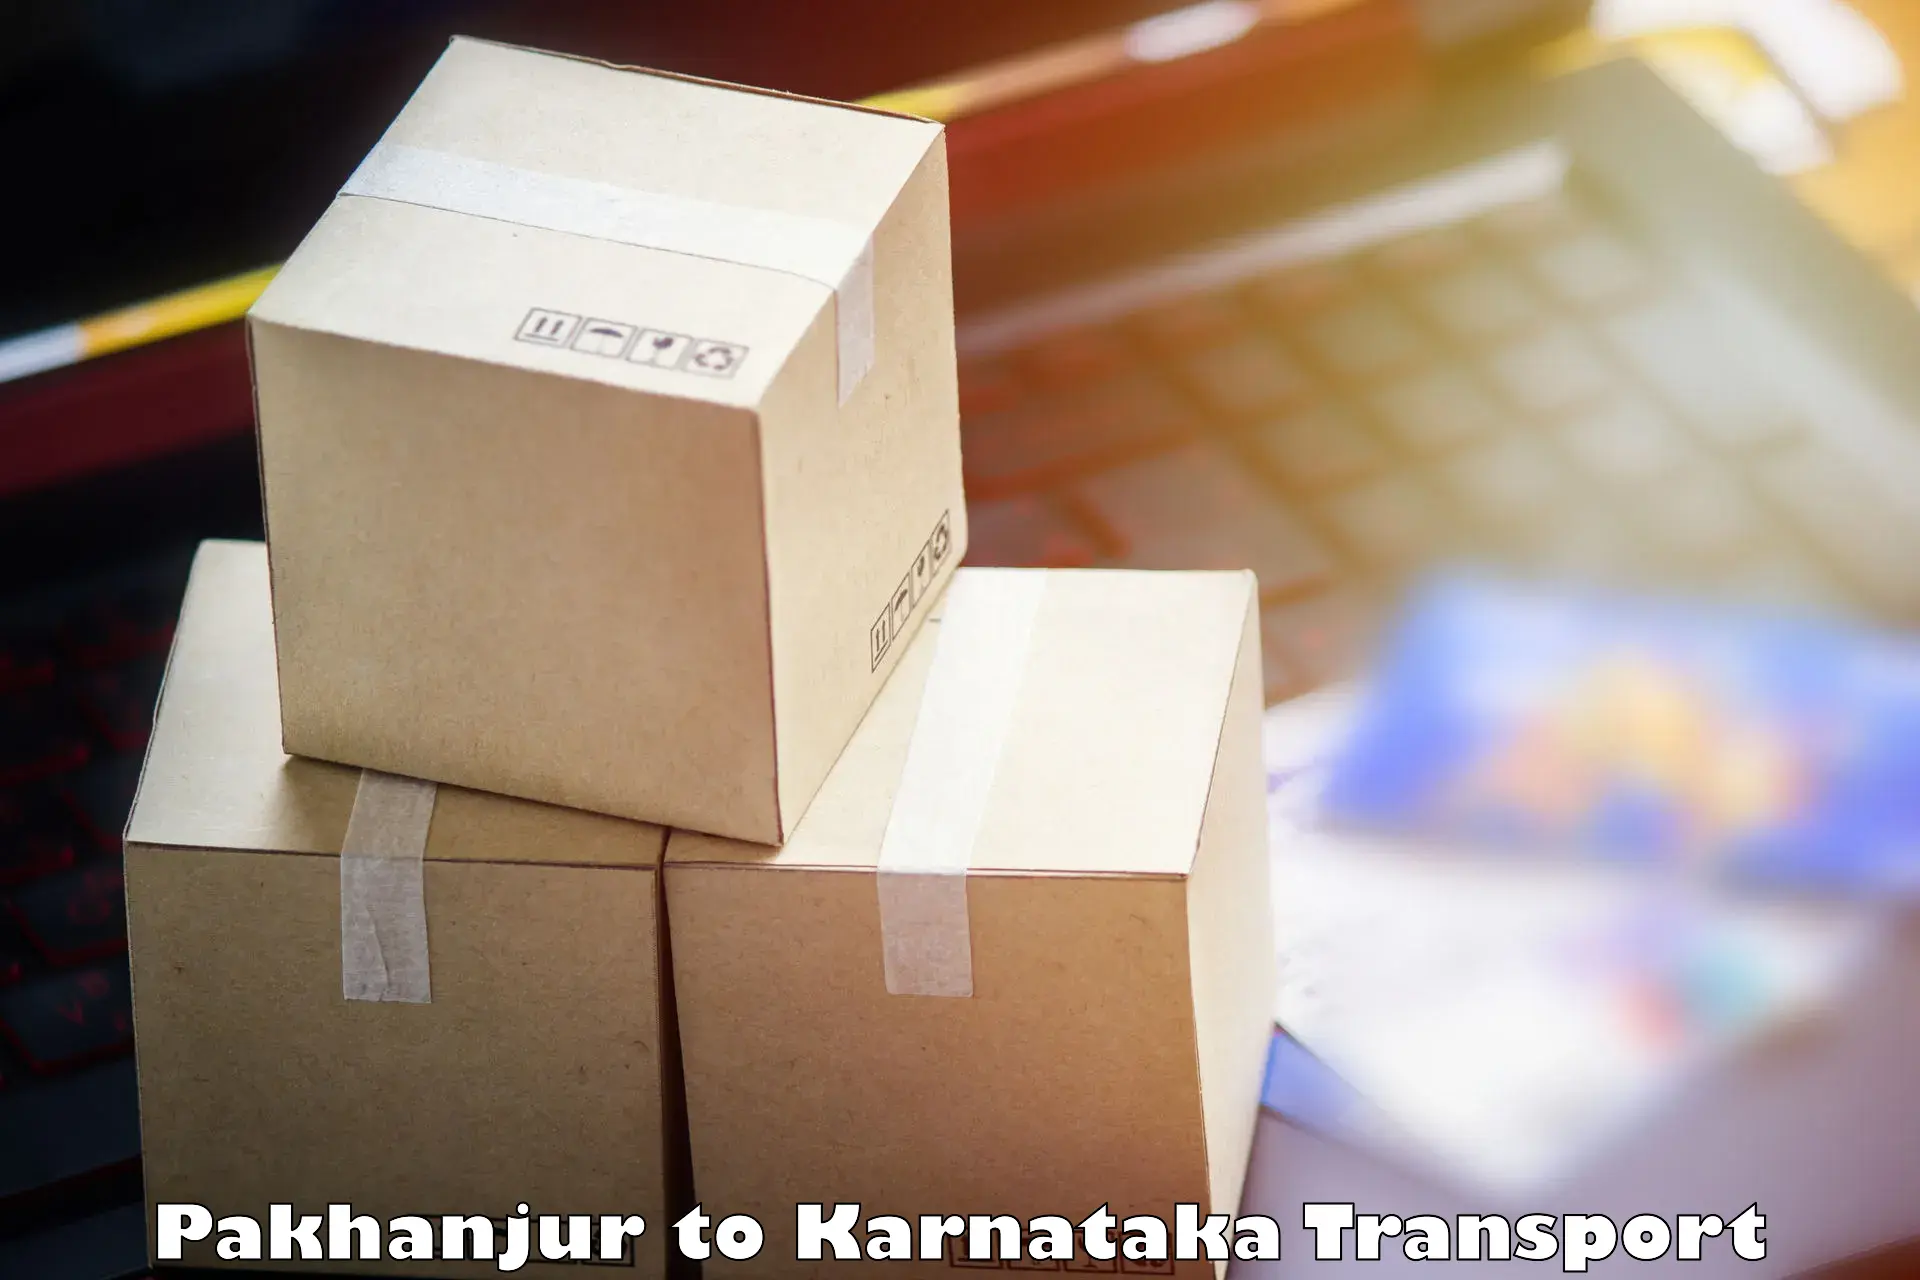 Shipping services Pakhanjur to Tiptur